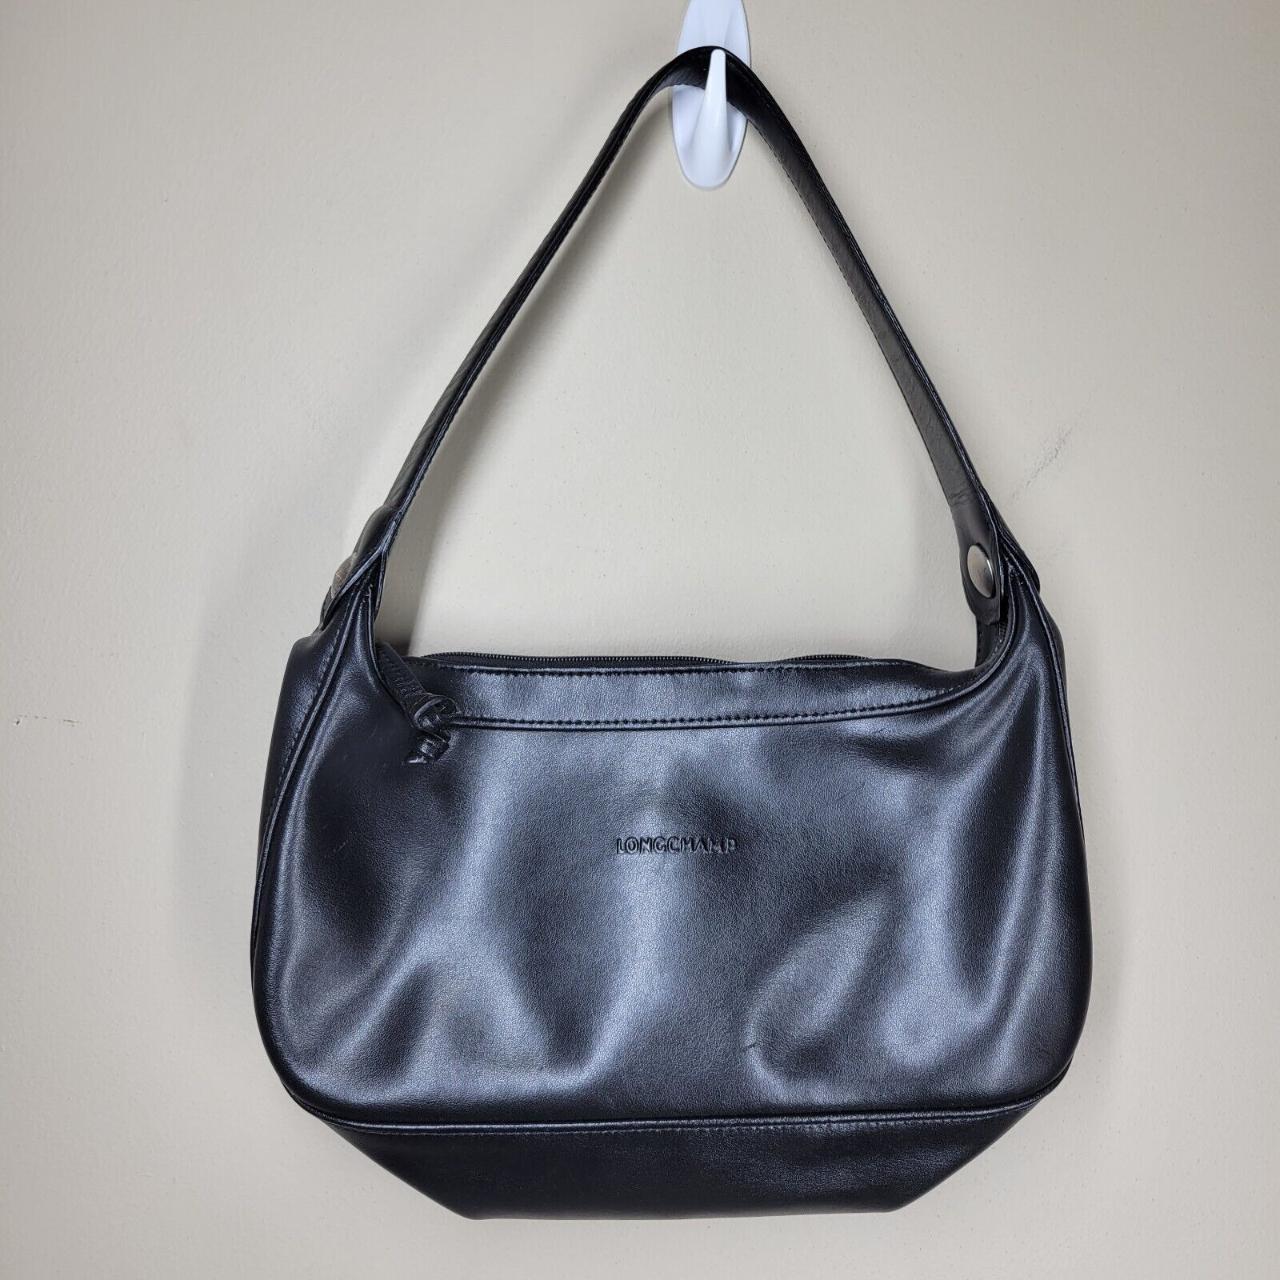 Longchamp Black Leather Hobo Shoulder Bag Classic ♡... - Depop